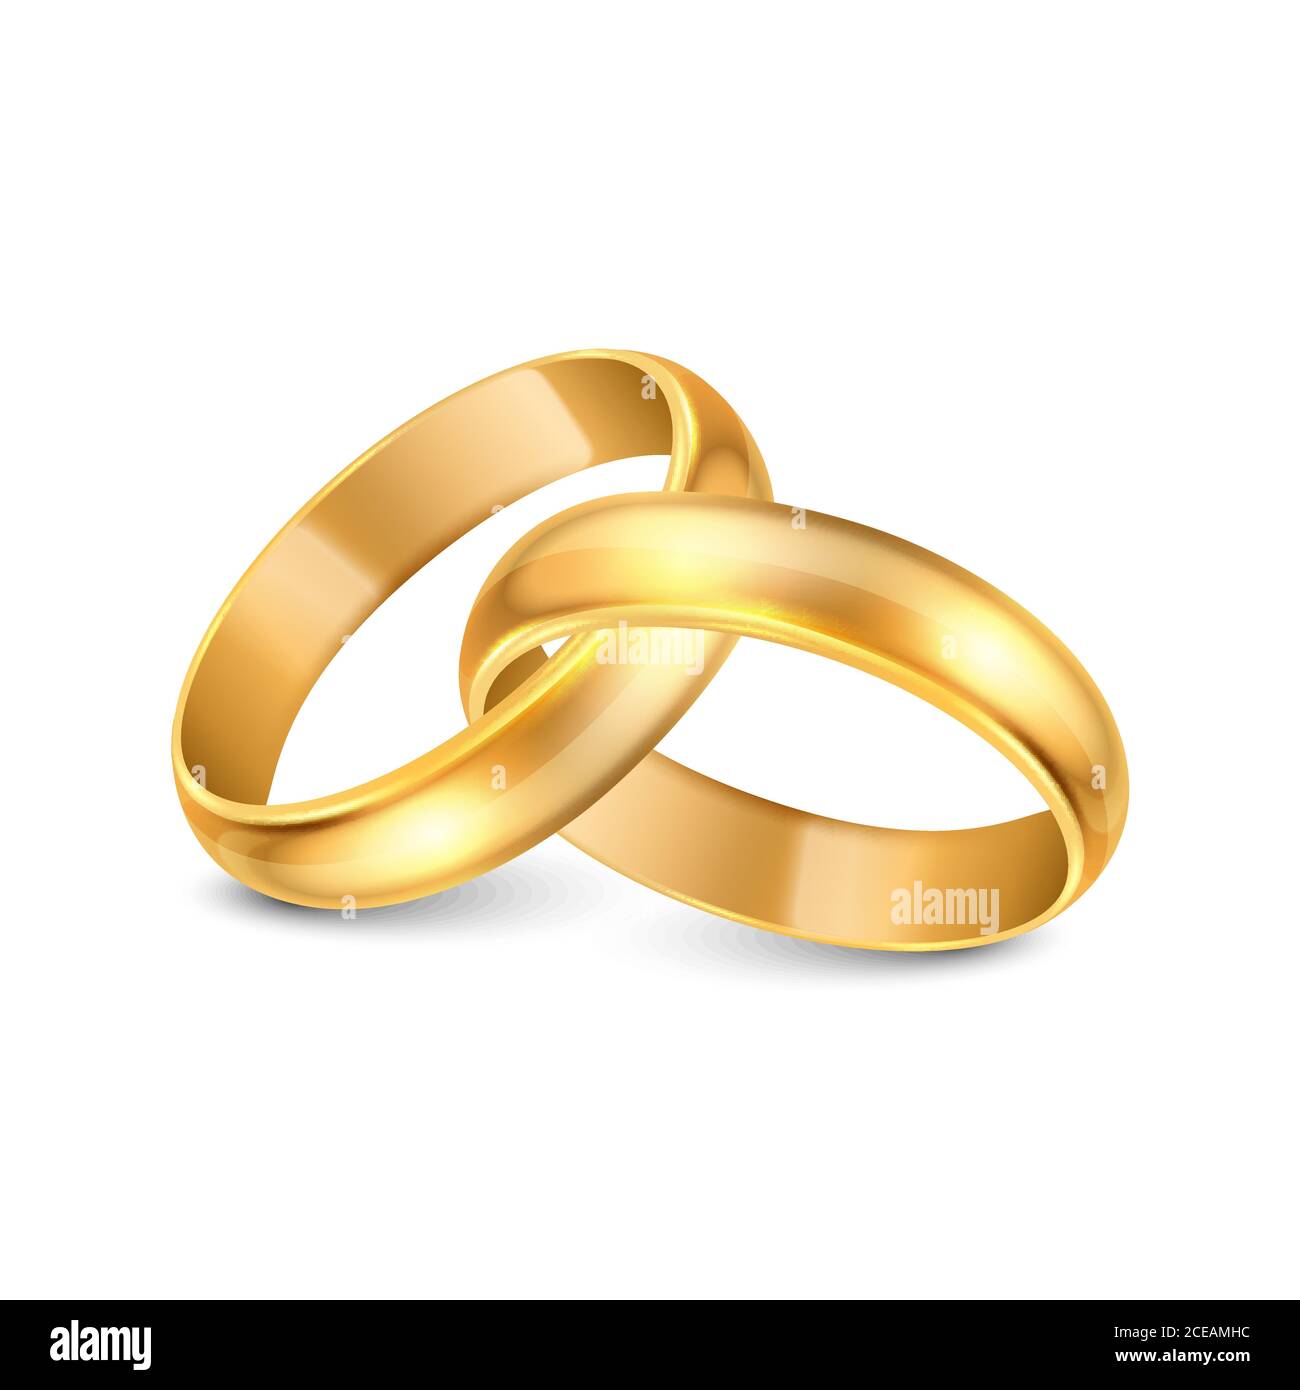 Nhẫn cưới vàng là món quà tuyệt vời để đánh dấu sự bắt đầu của hành trình hạnh phúc mới. Hãy xem những hình ảnh về những chiếc nhẫn vàng quý giá và lộng lẫy này để cảm nhận được sự trân quý và đẳng cấp của chúng.